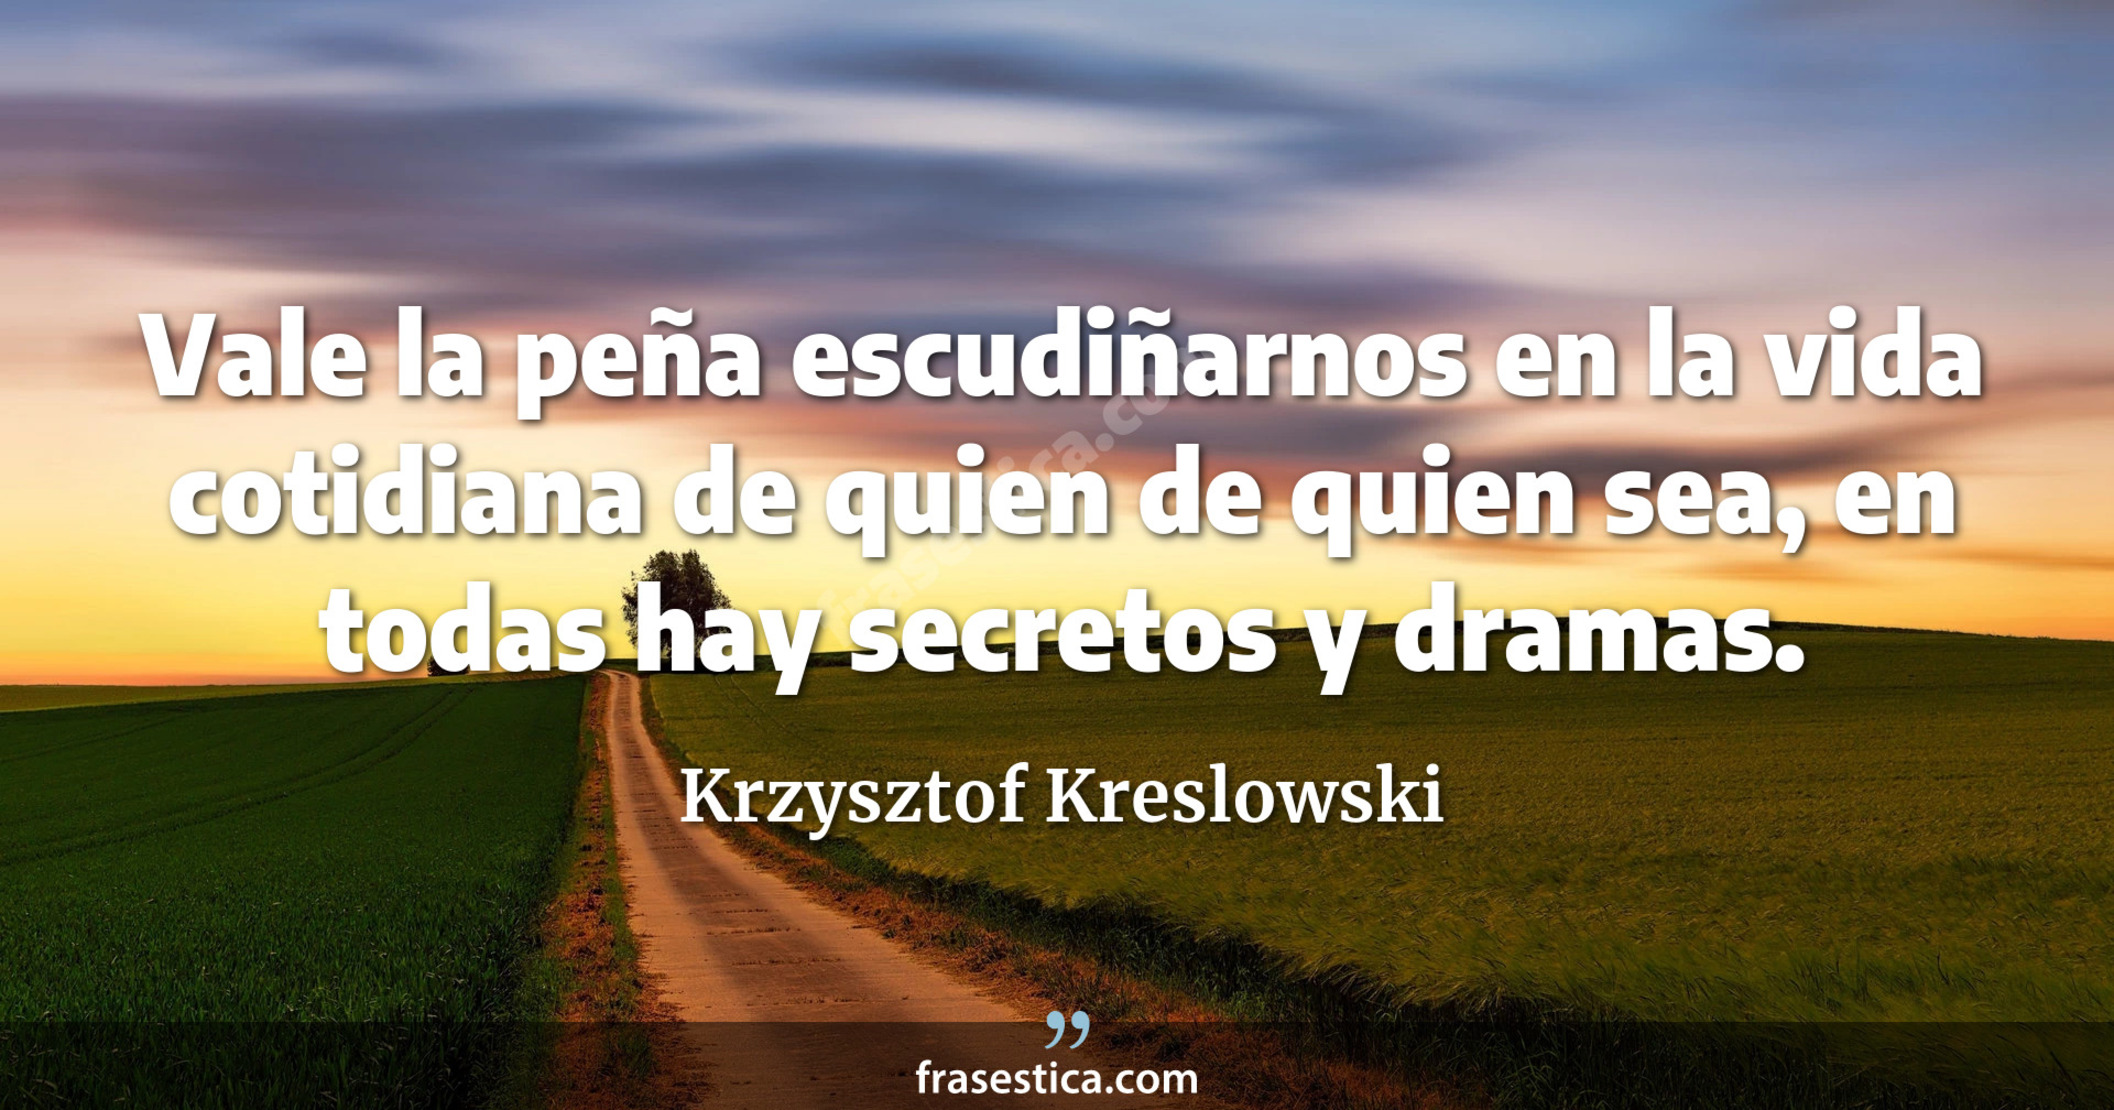 Vale la peña escudiñarnos en la vida cotidiana de quien de quien sea, en todas hay secretos y dramas. - Krzysztof Kreslowski